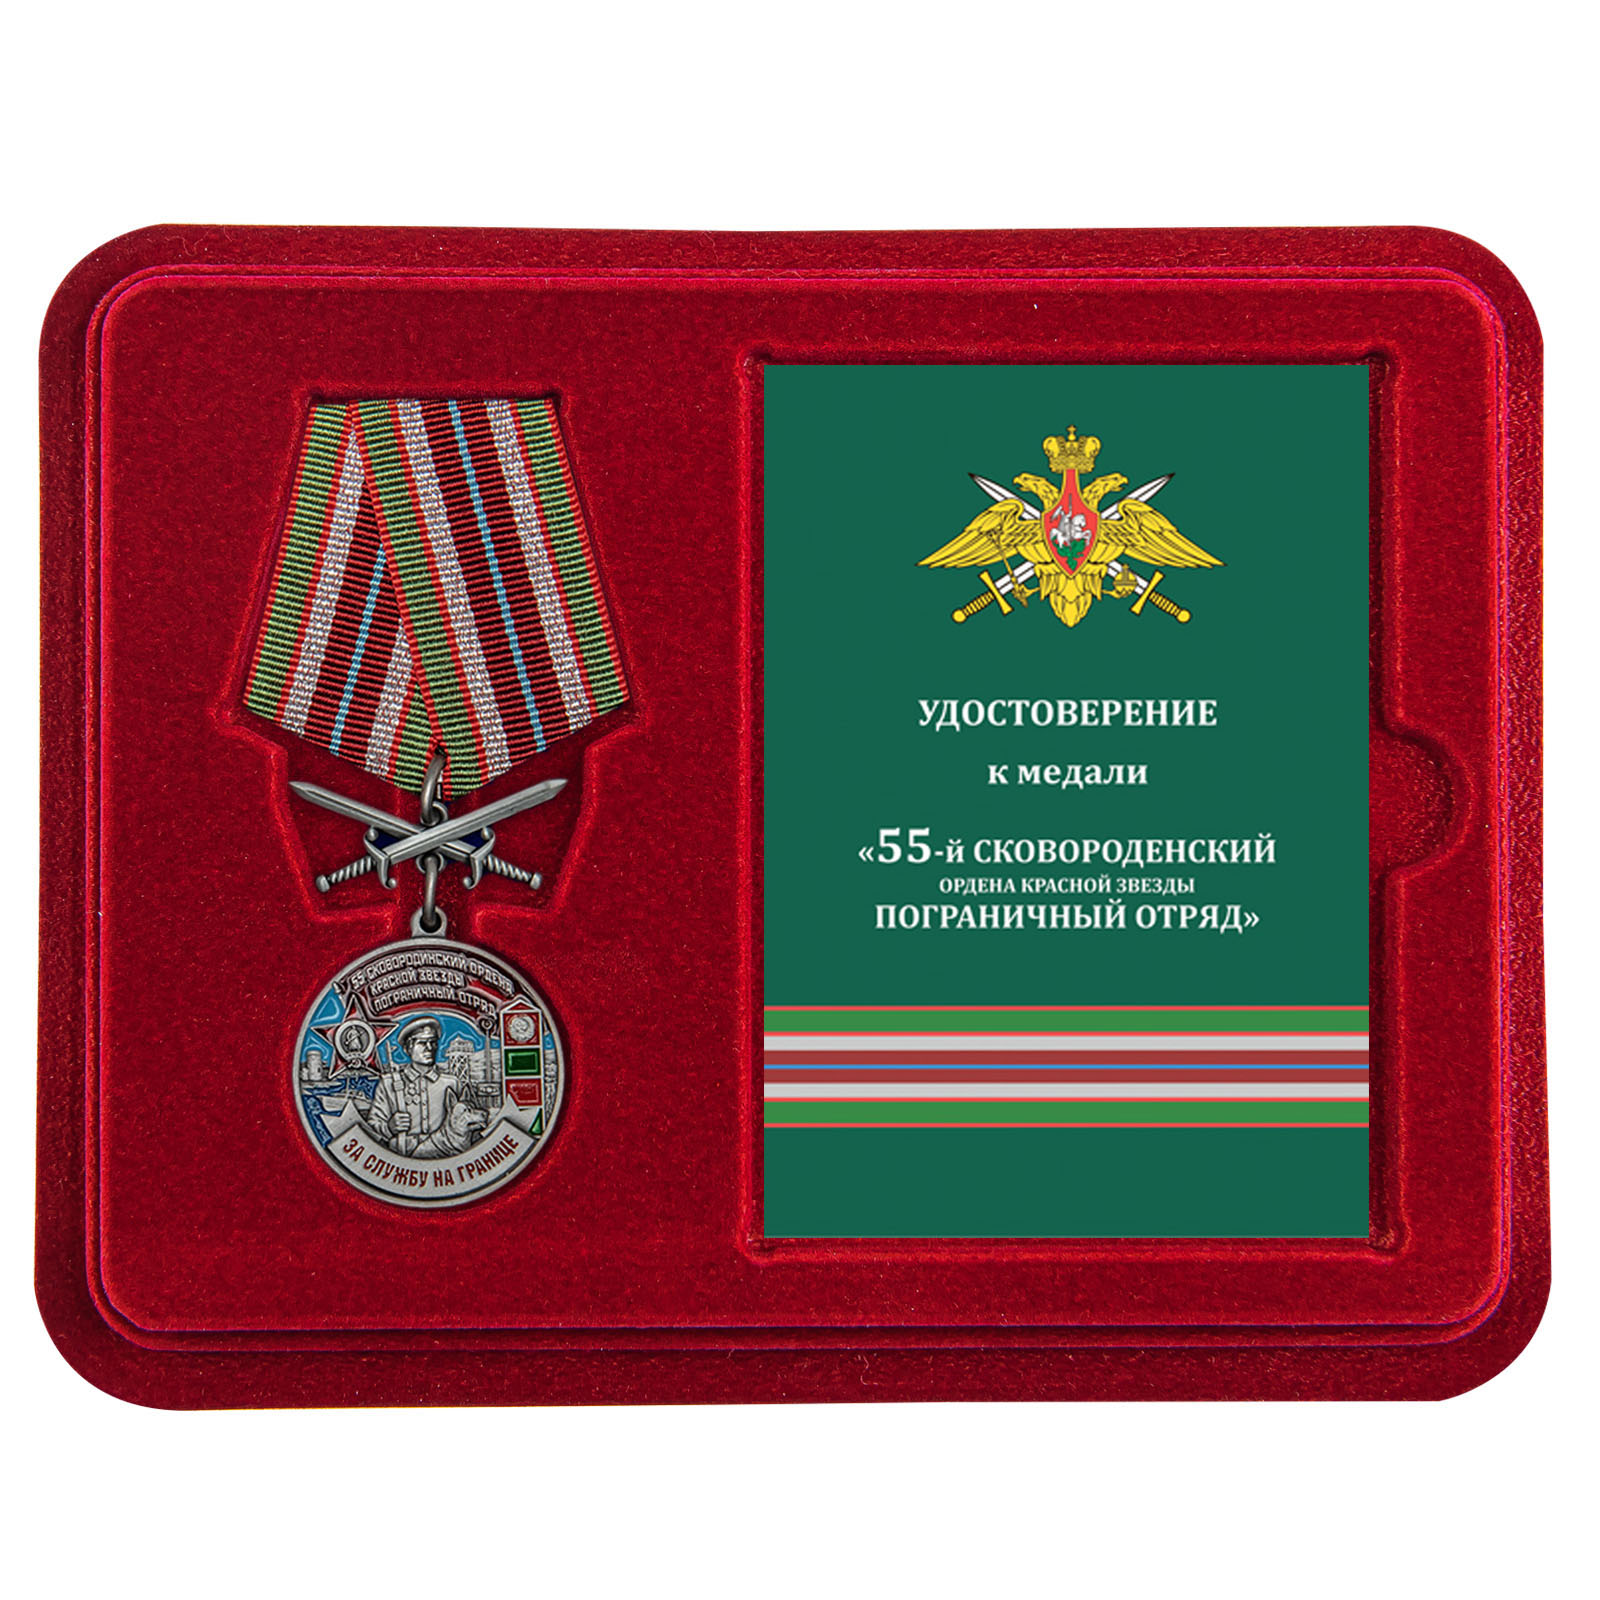 Купить медаль За службу в Сковородинском пограничном отряде в подарок